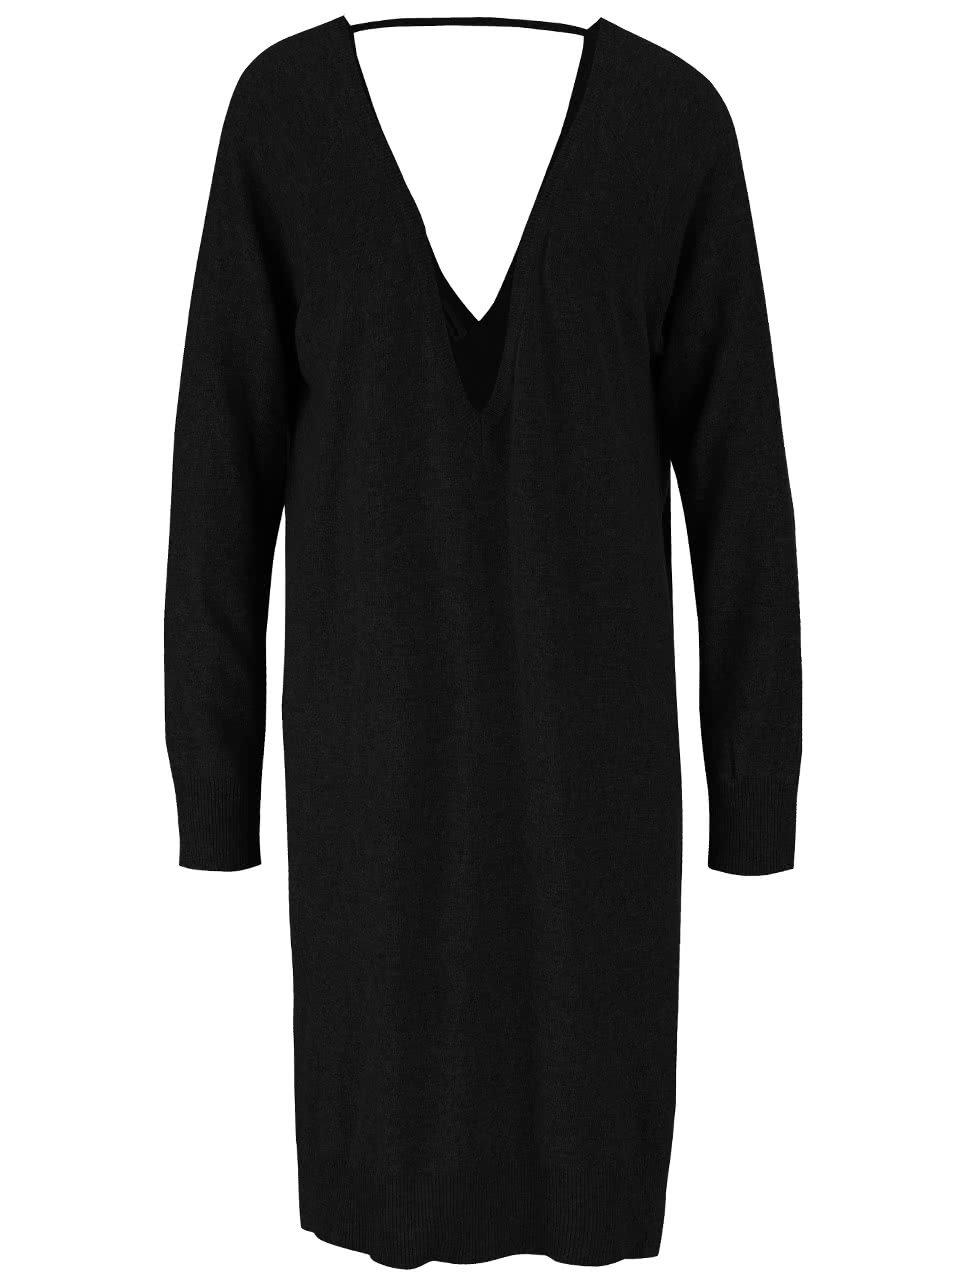 Černé svetrové volnější šaty s véčkovým výstřihem Noisy May Mena